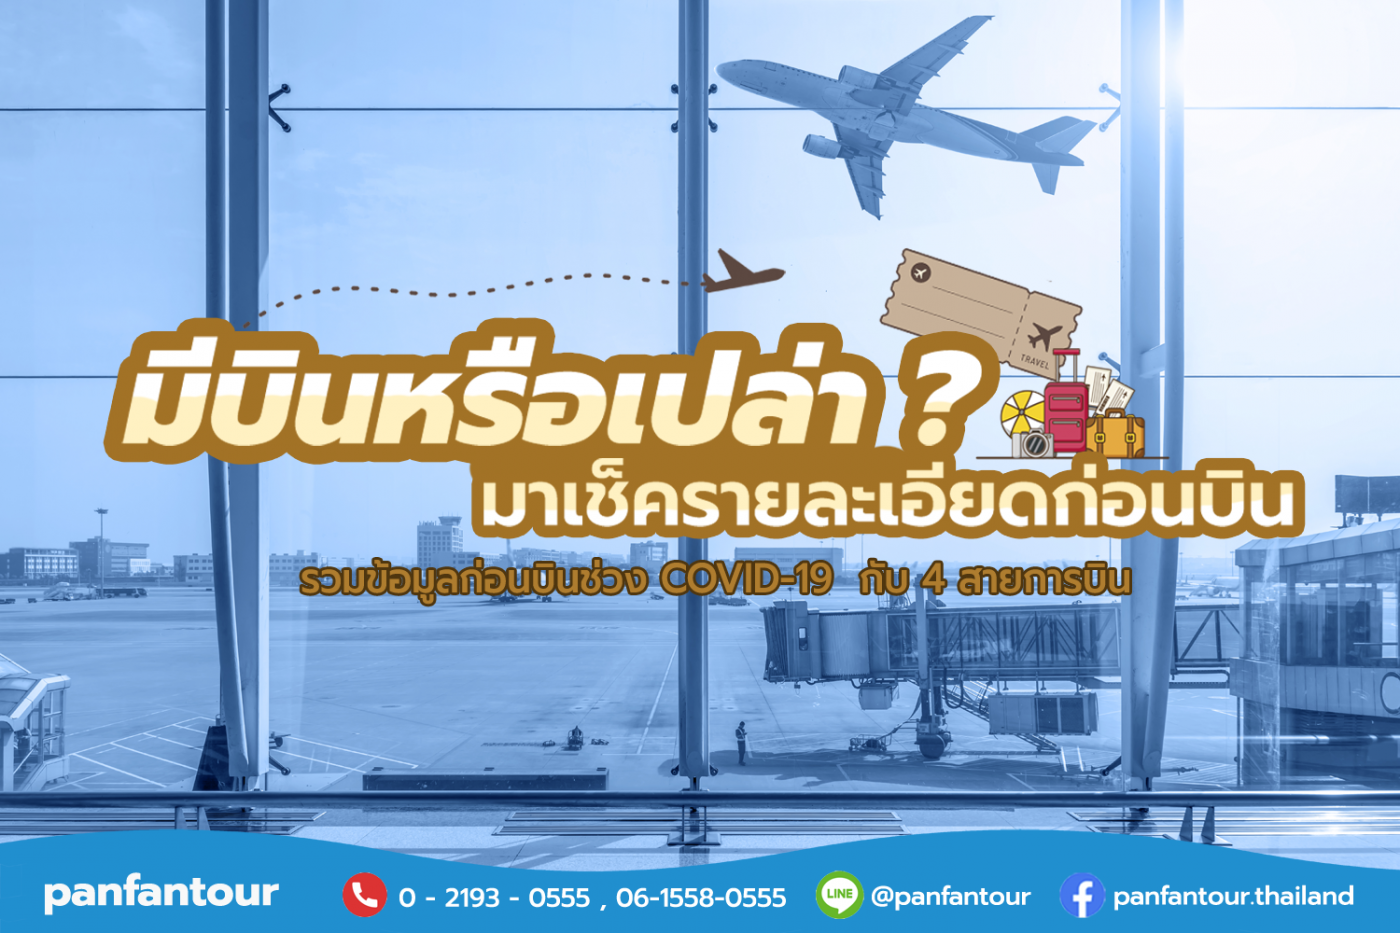 ชัวร์ก่อนบิน - Thai Vietjet Air